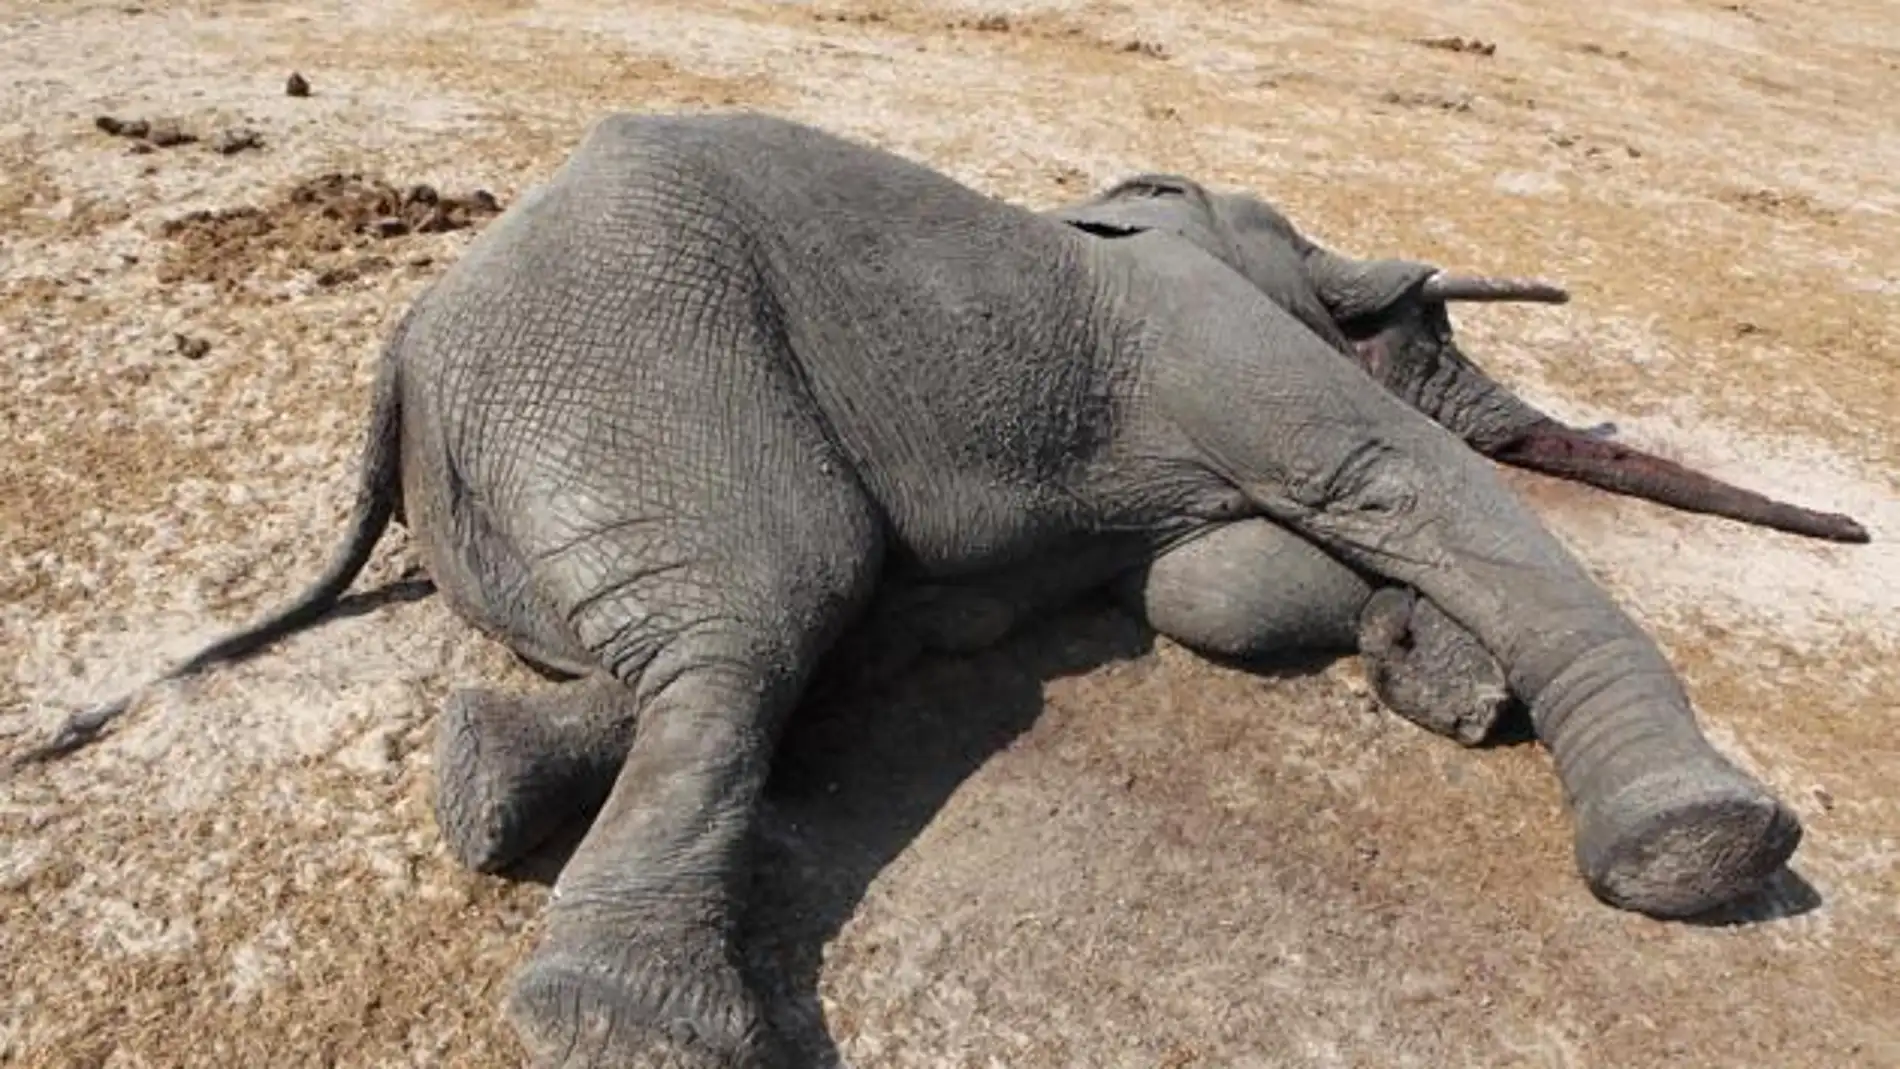 Elefante muerto en Zimbabue